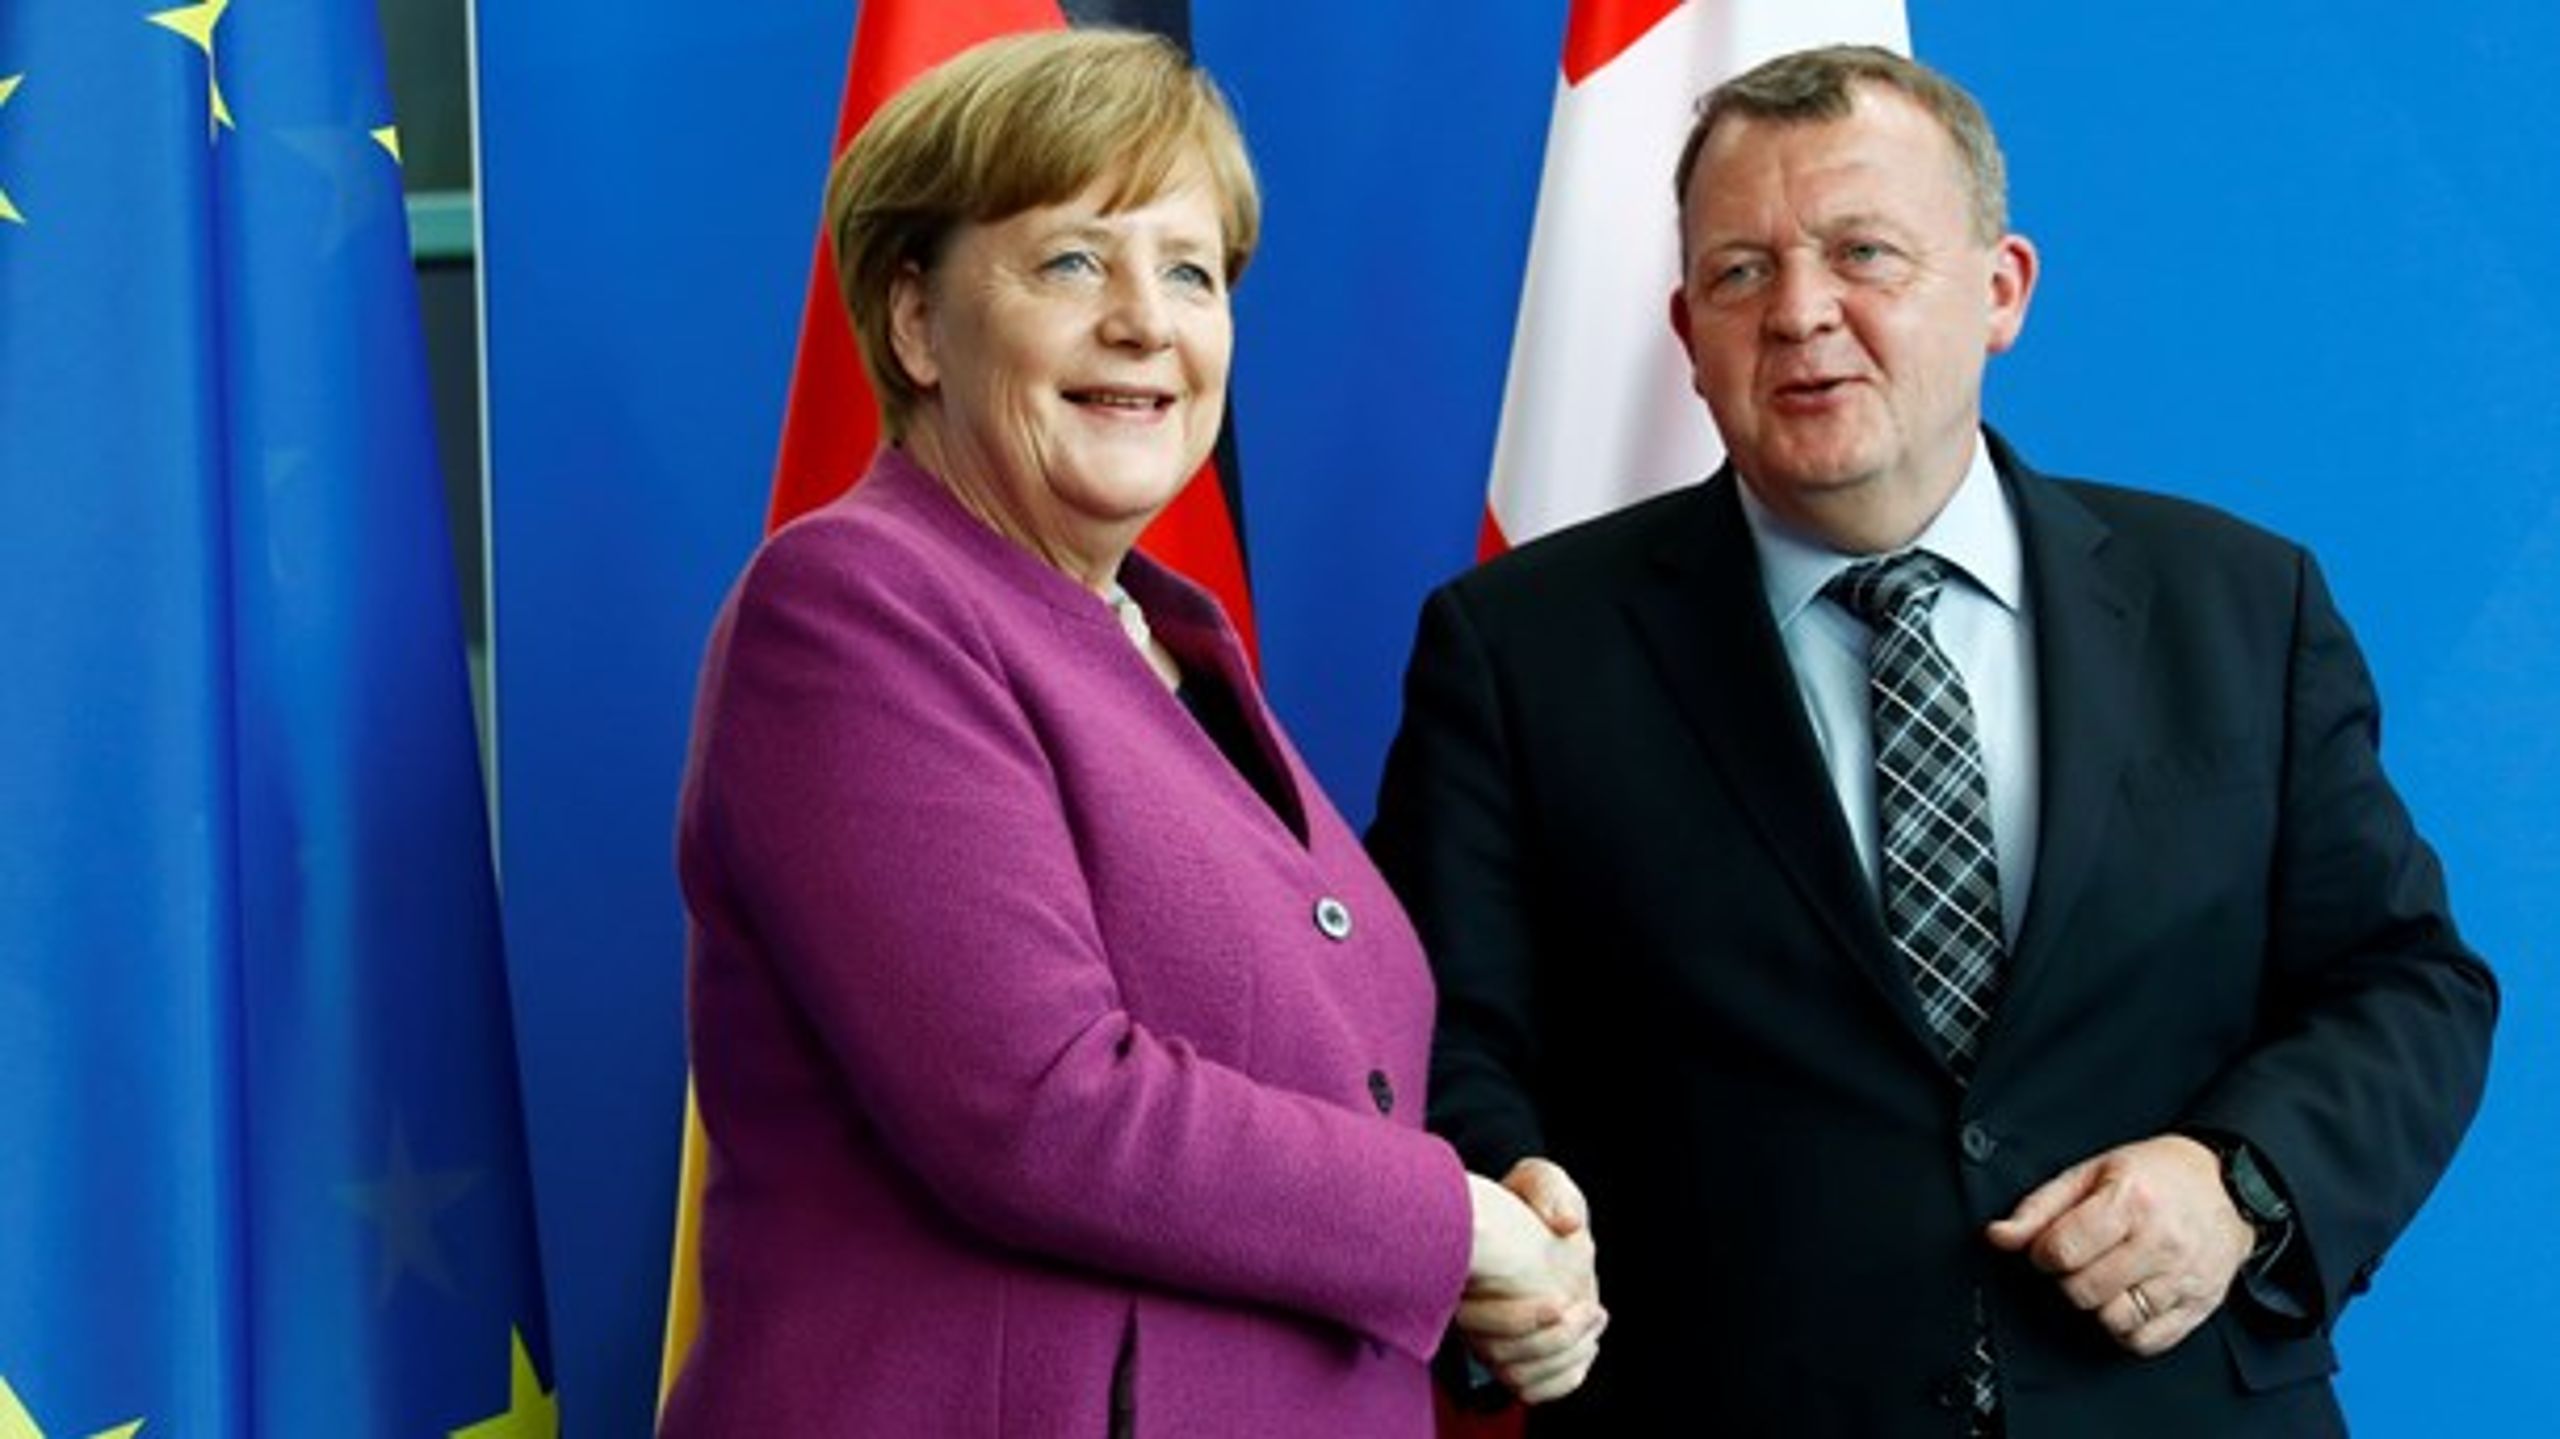 Statsminister Lars Løkke Rasmussen (V) mødes torsdag&nbsp;blandt andet med den tyske kansler, Angela Merkel, i Rumænien for at deltage i et uformelt EU-topmøde.&nbsp;